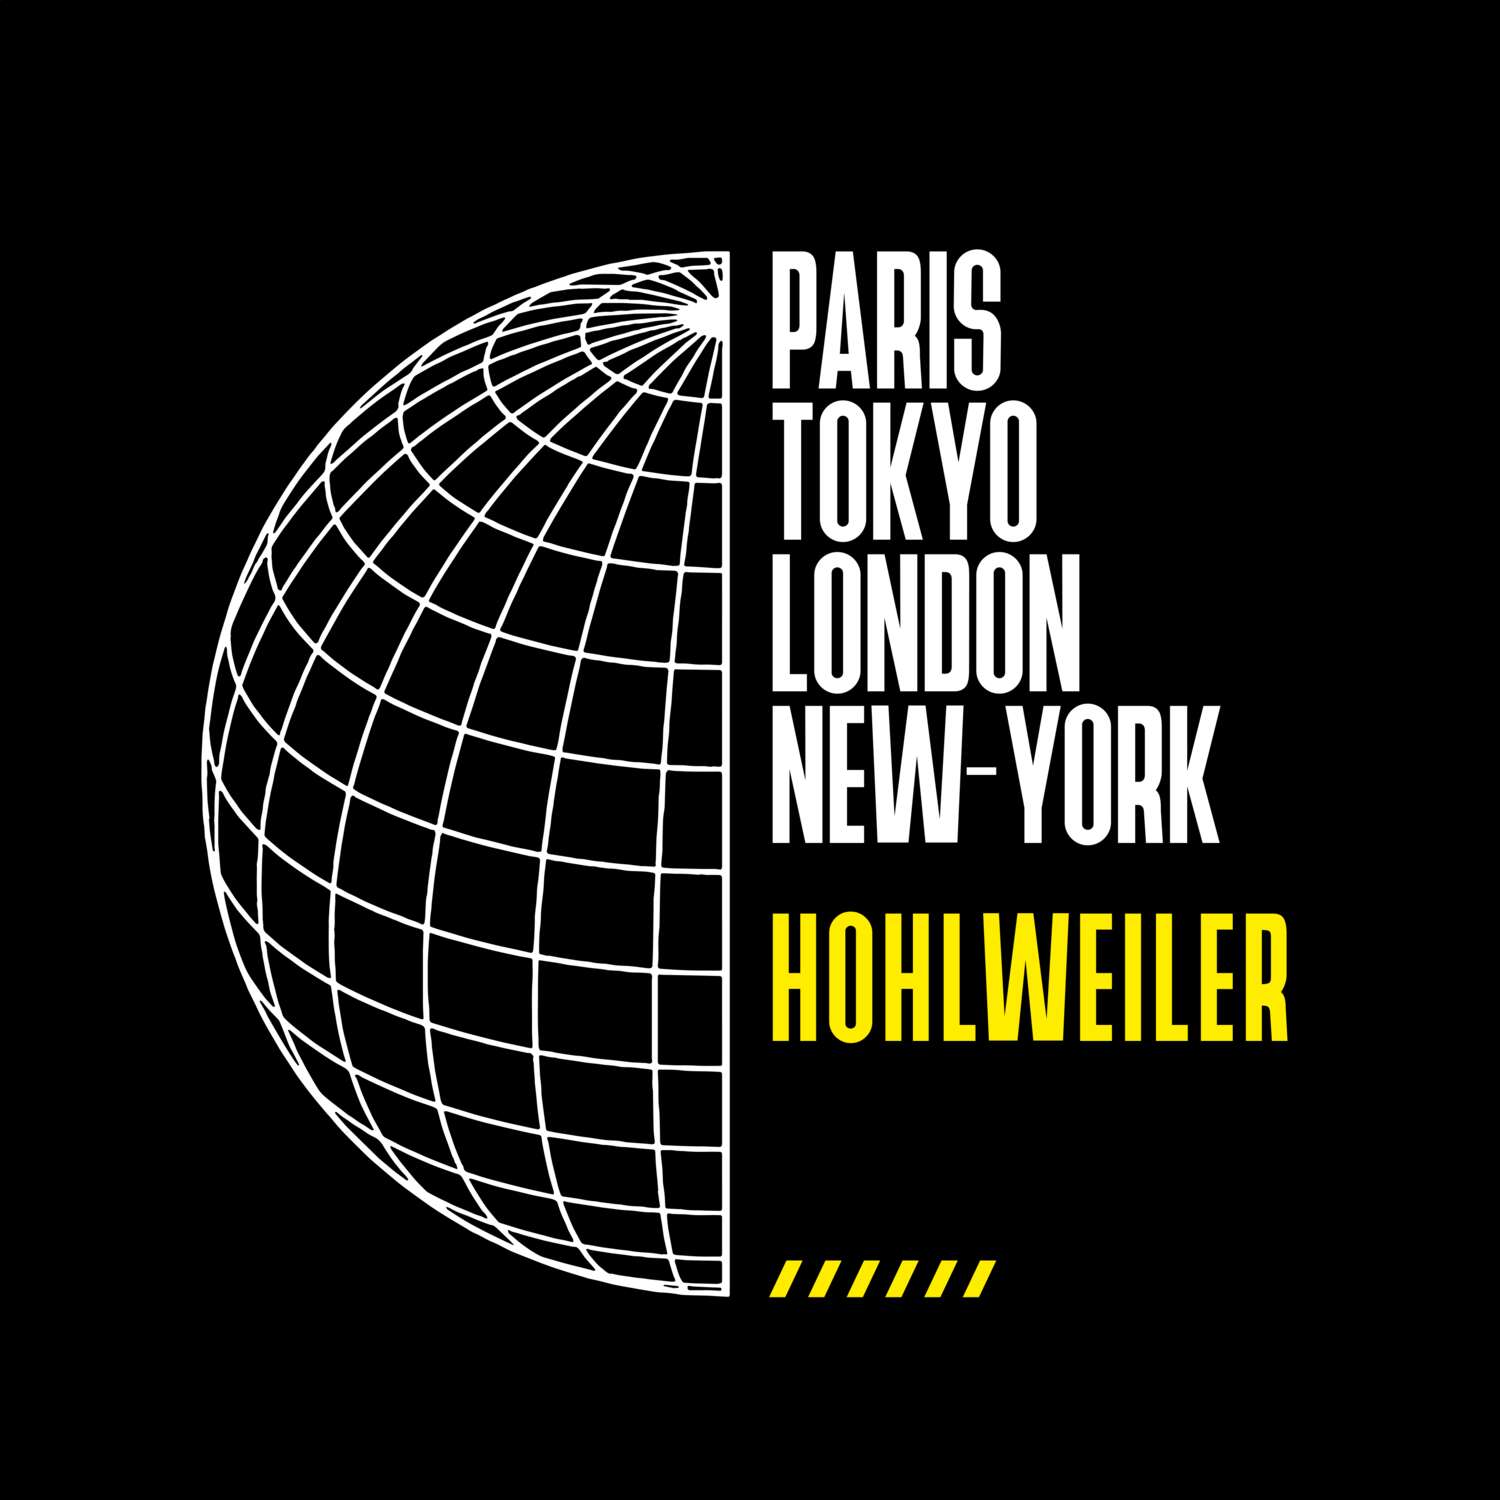 Hohlweiler T-Shirt »Paris Tokyo London«